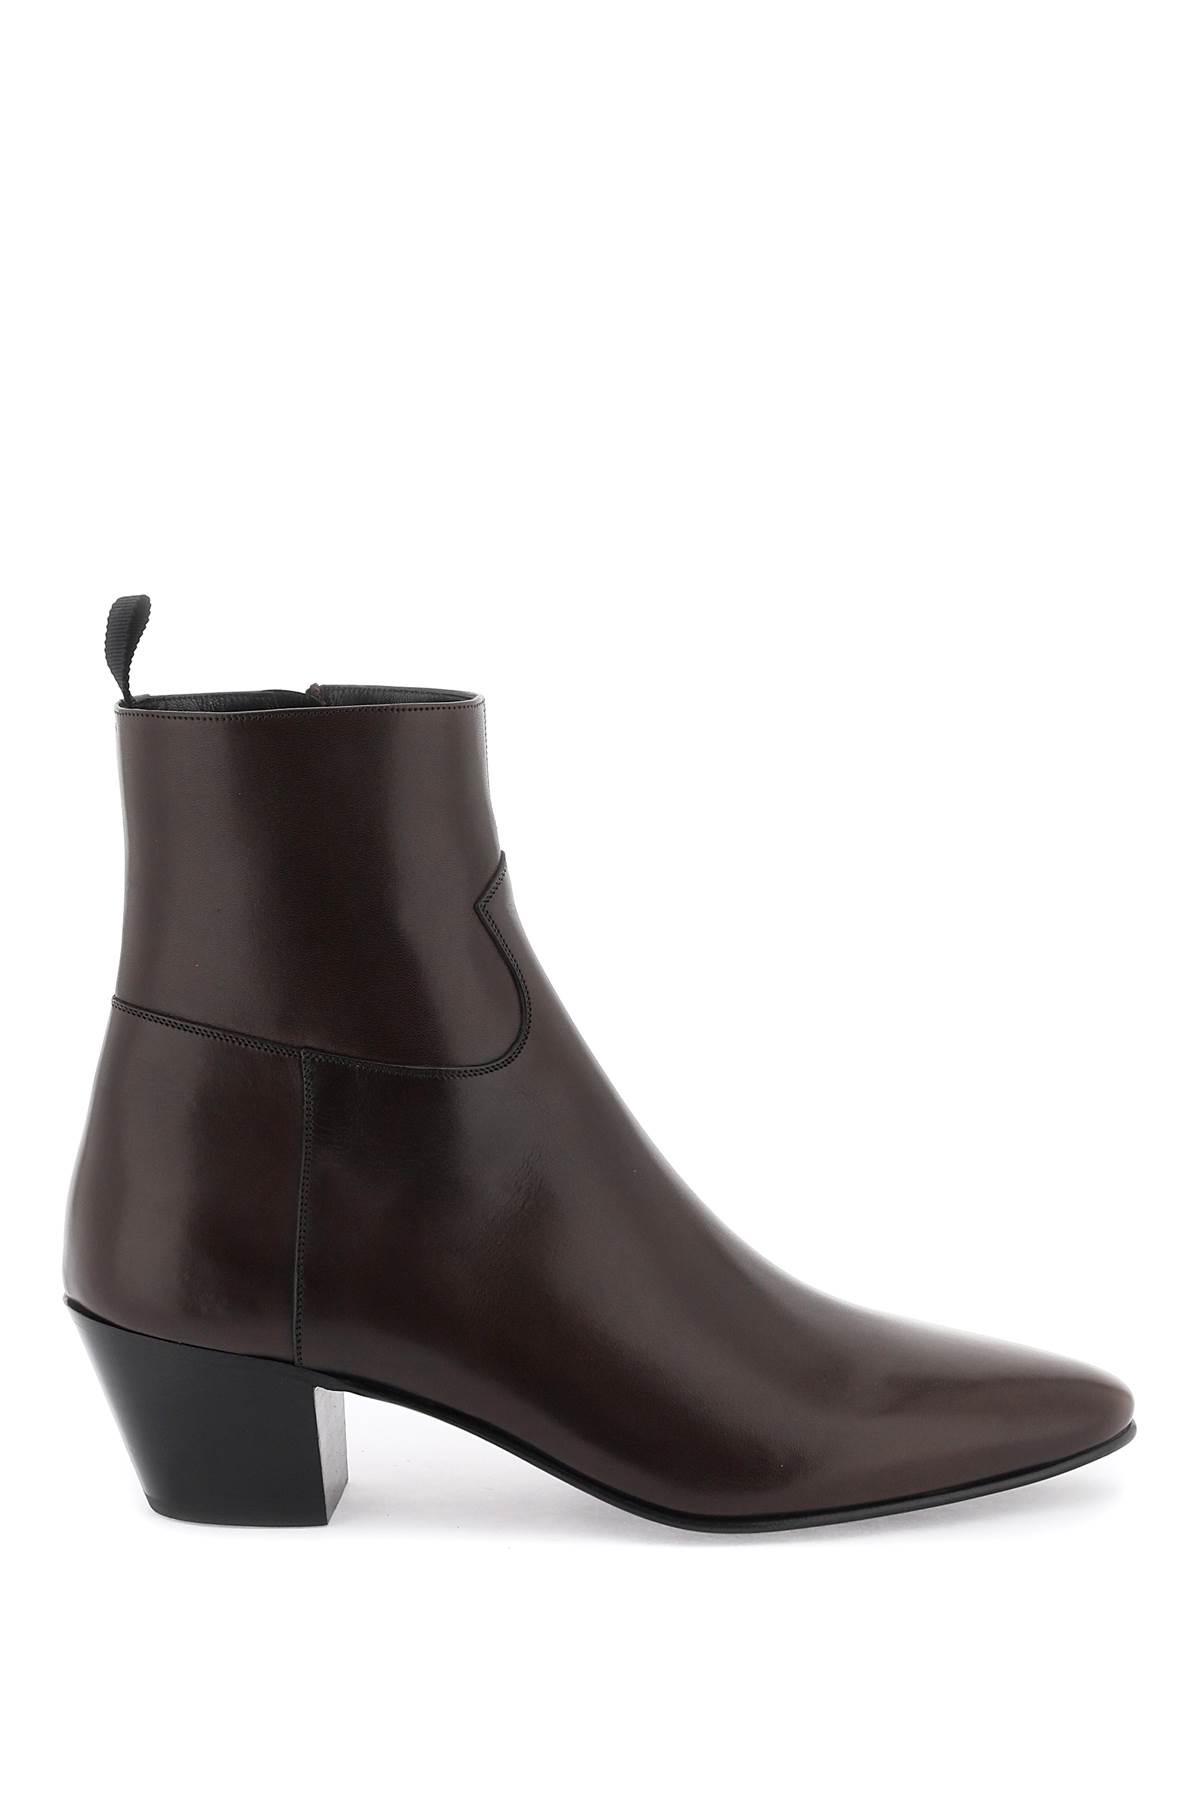 Celine ankle boots -jacno- Man Sz.11 EUR.44 340603791C Brown